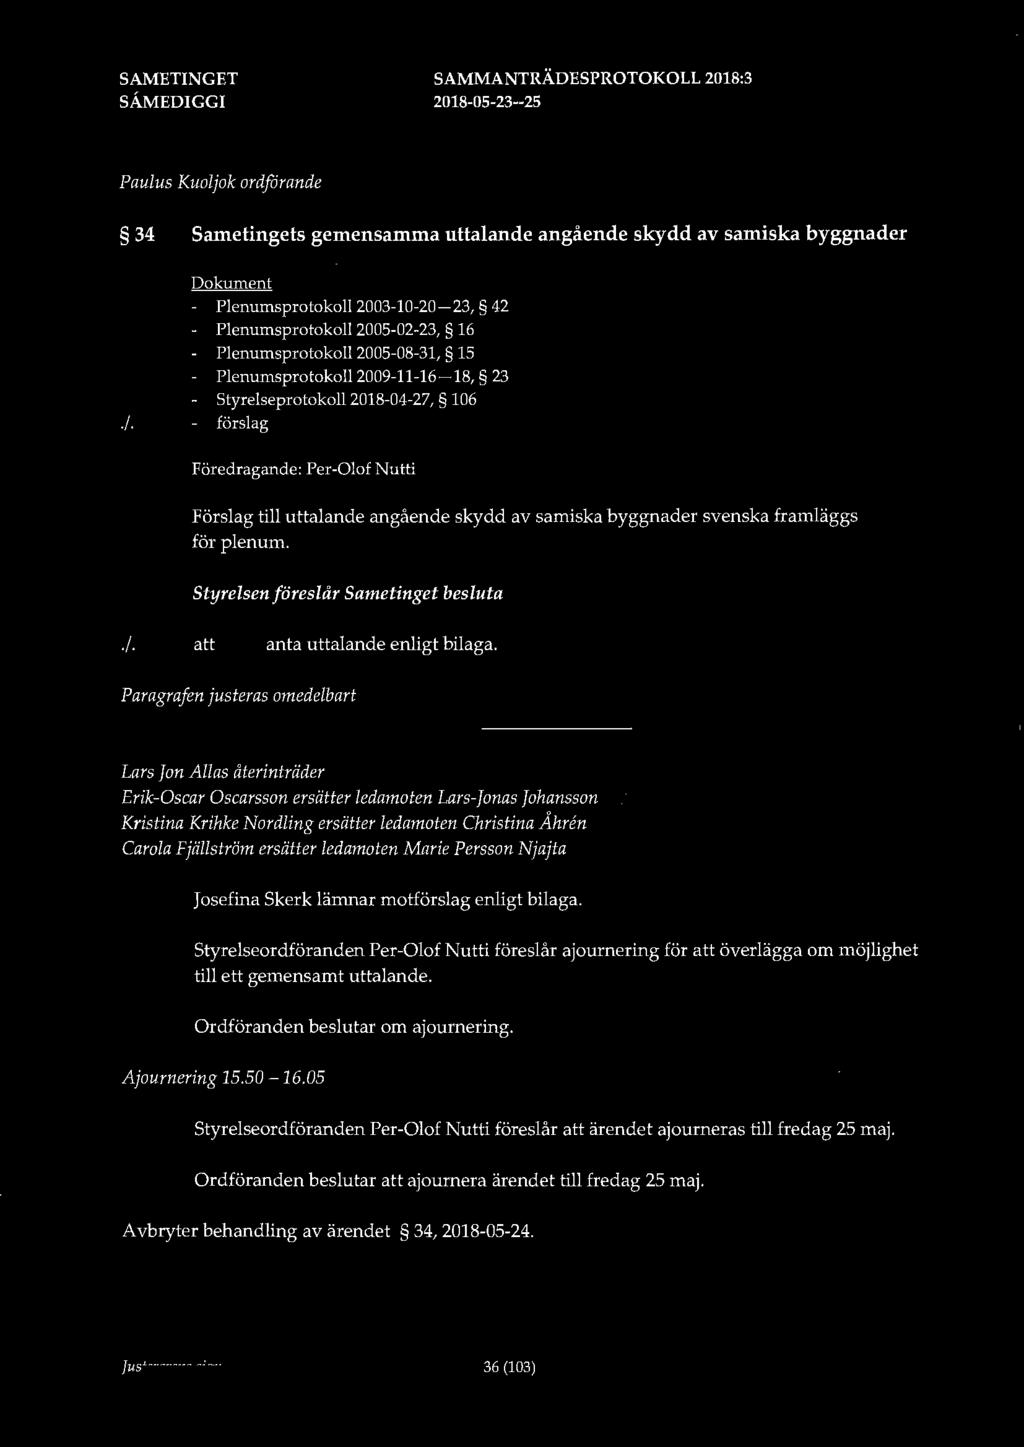 Paulus Kuoljok ordfdrande 34 Sametingets gemensamma uttalande angående skydd av samiska byggnader Dokument - Plenumsprotokoll 2003-10-20-23, 42 Plenumsprotokoll 2005-02-23, 16 Plenumsprotokoll